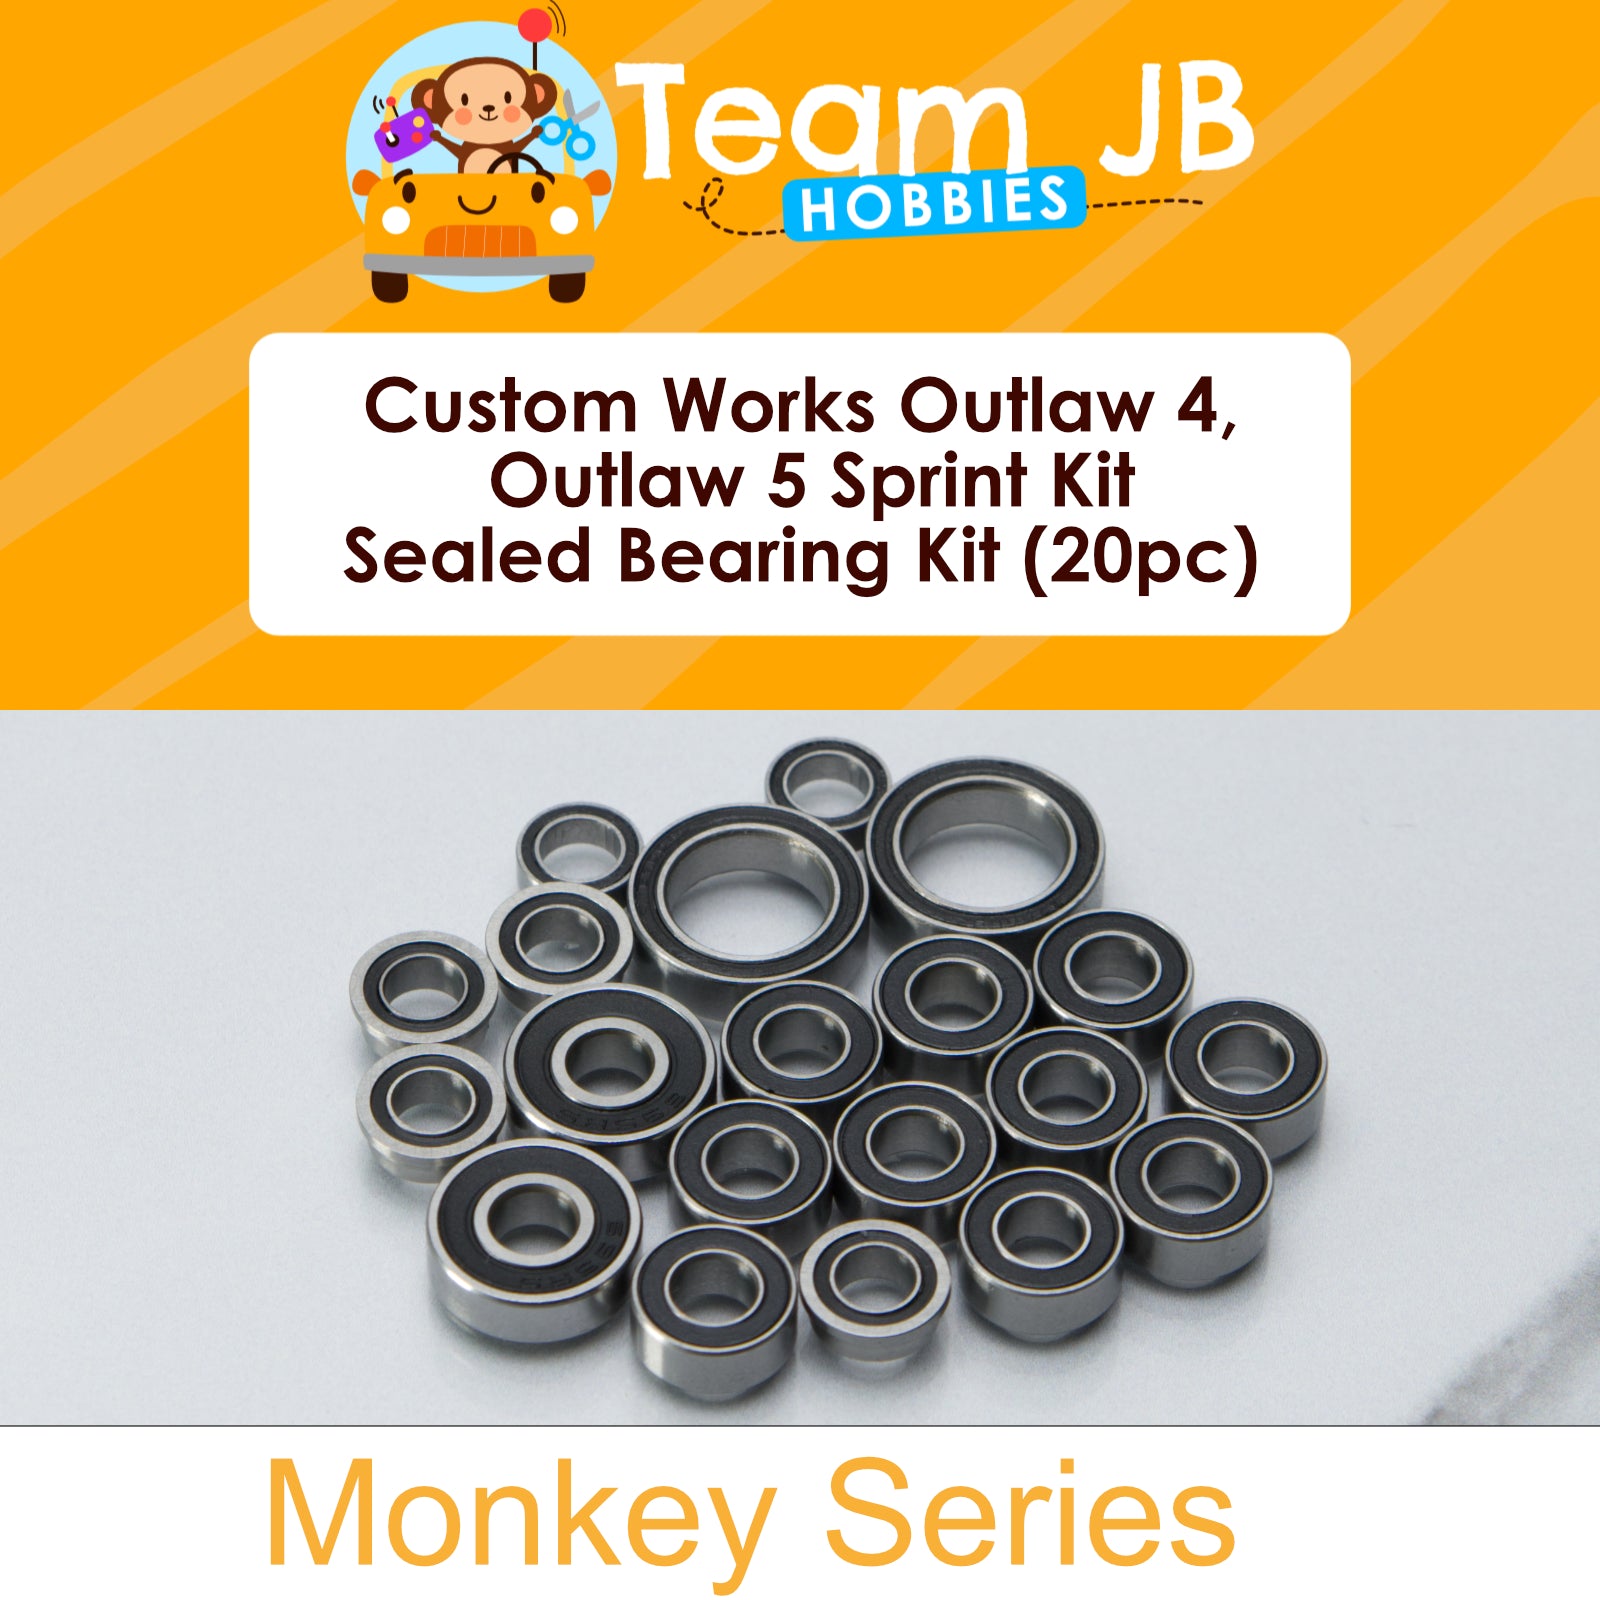 Custom Works Outlaw 4, Outlaw 5 Sprint Kit - Sealed Bearing Kit